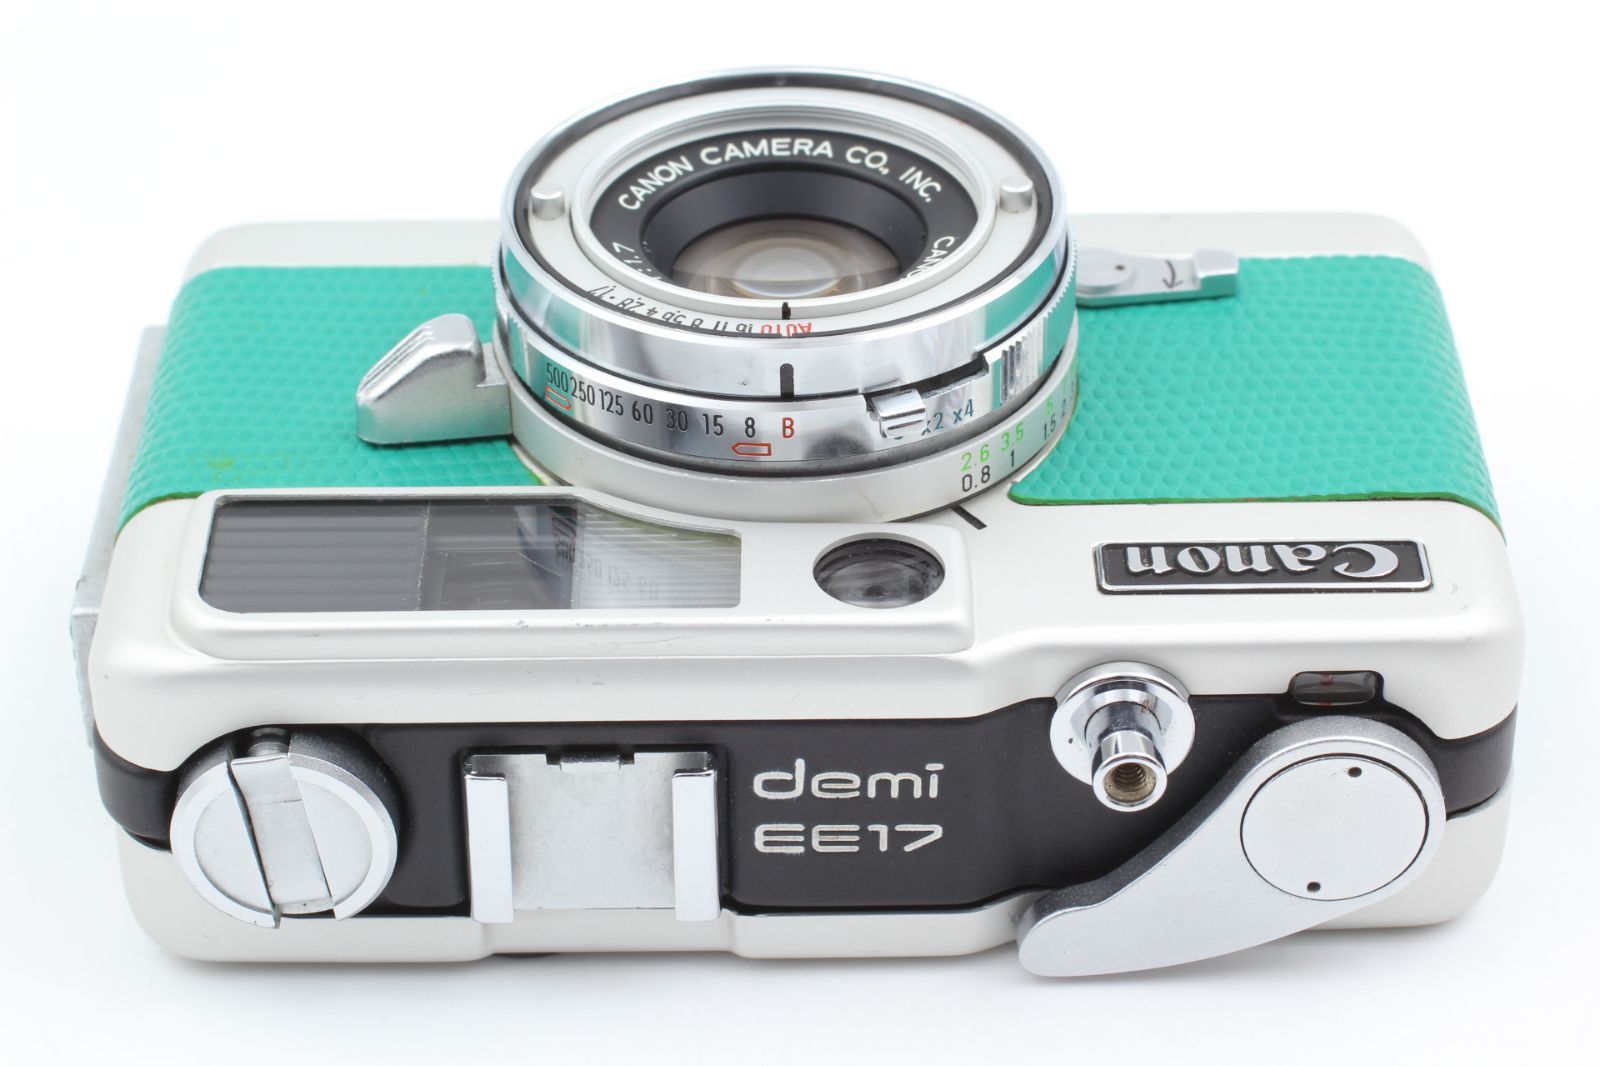 並品 Canon Demi EE17 ハーフフレームカメラ 露出計-OK